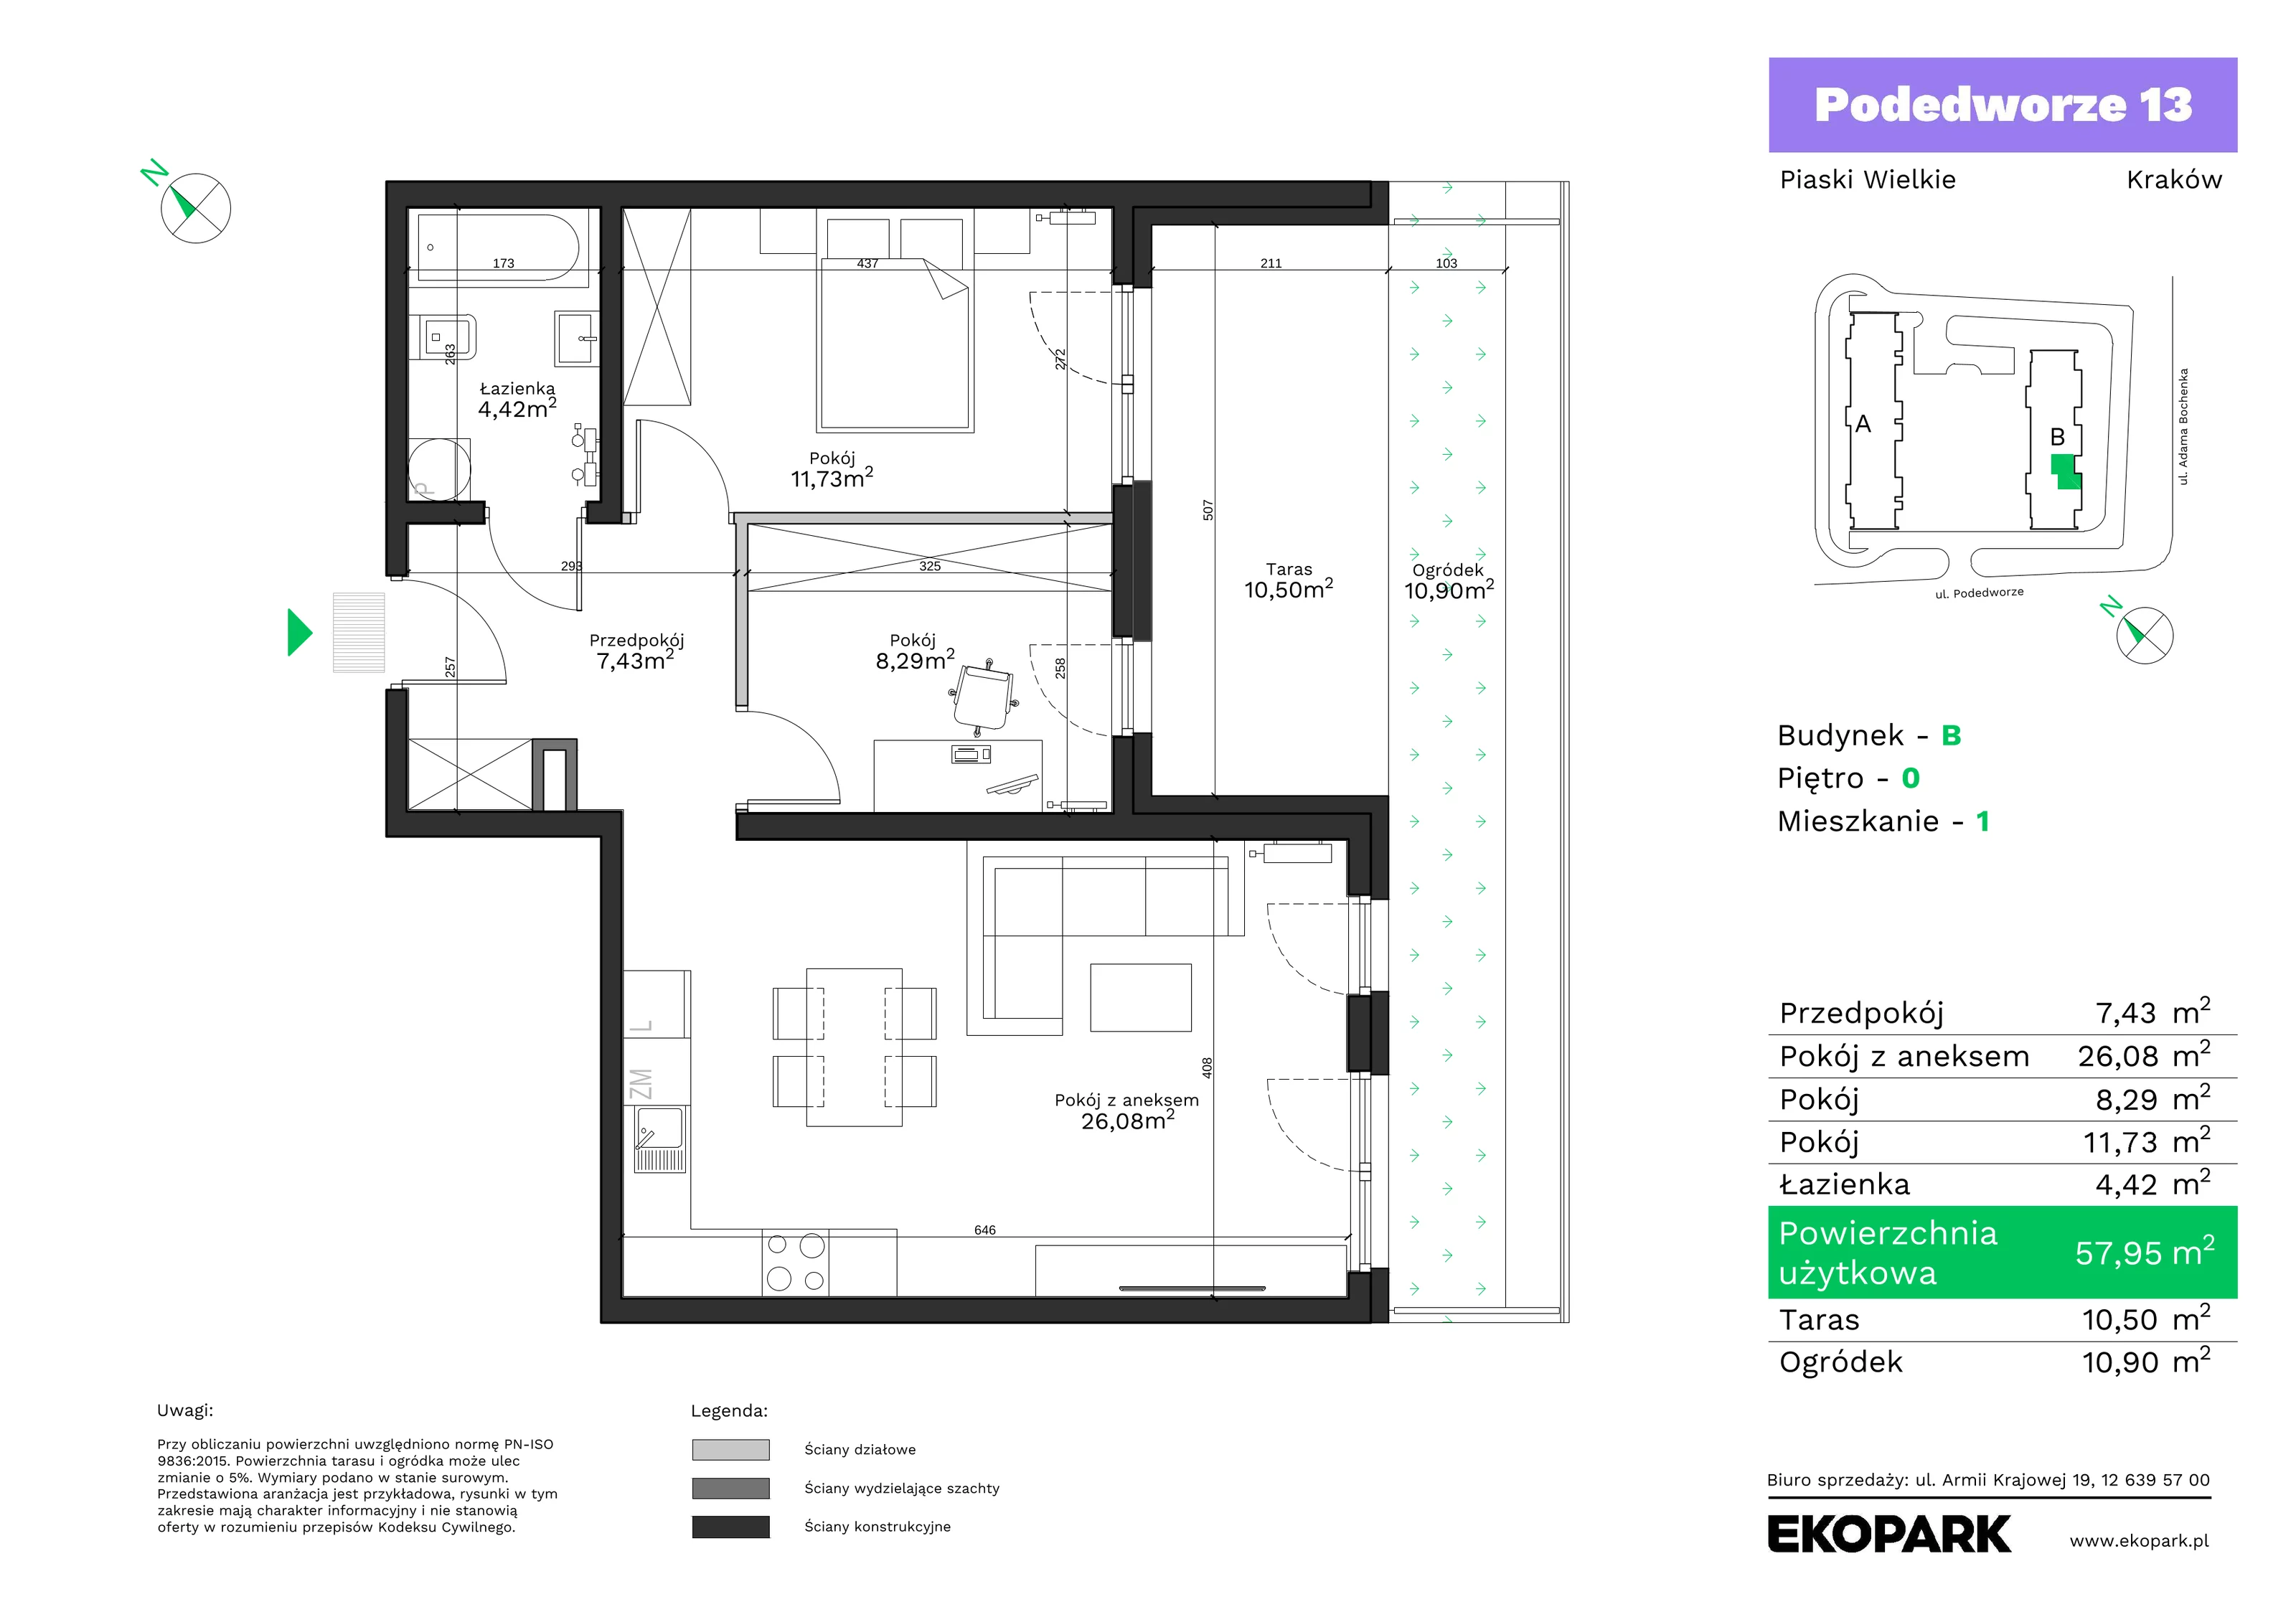 Mieszkanie 57,95 m², parter, oferta nr B1, Podedworze 13, Kraków, Podgórze Duchackie, Piaski Wielkie, ul. Podedworze 13